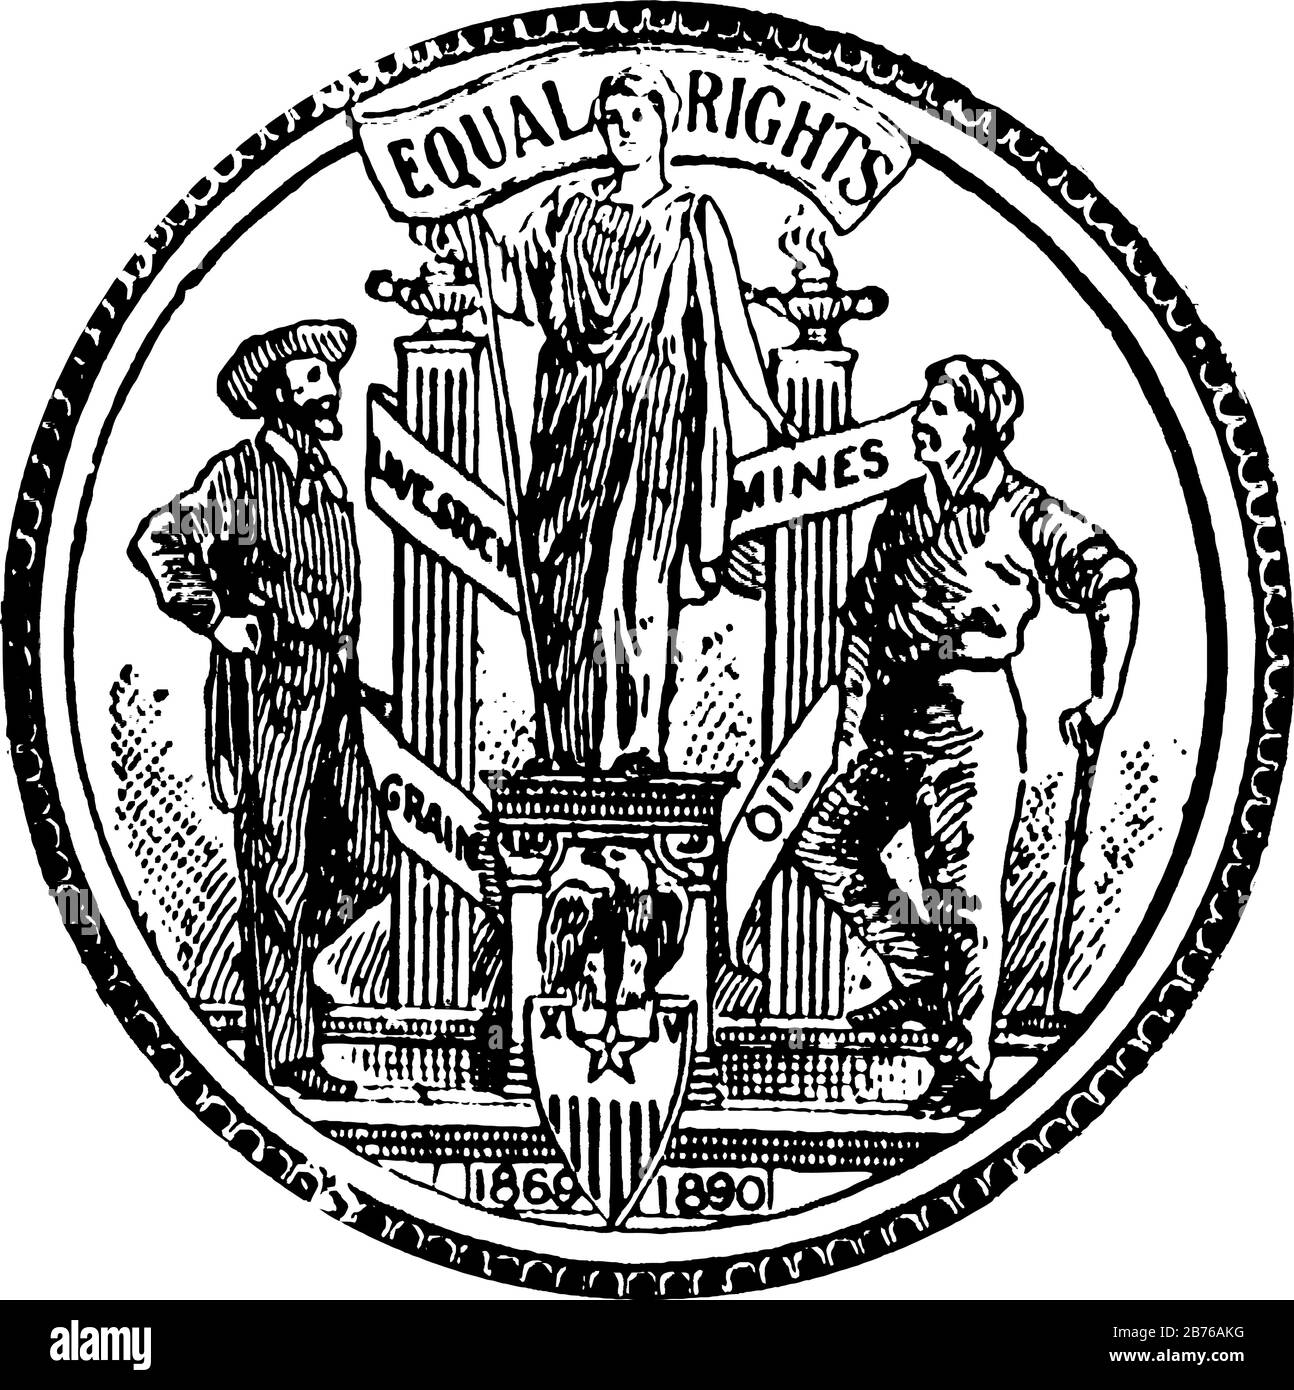 Siegel des Gebietes von Wyoming, 1904/05, dieses kreisförmige Siegel hat zwei Männer auf beiden Seiten von Statue, Adler und Schild mit Streifen, GLEICHE RECHTE ist wri Stock Vektor